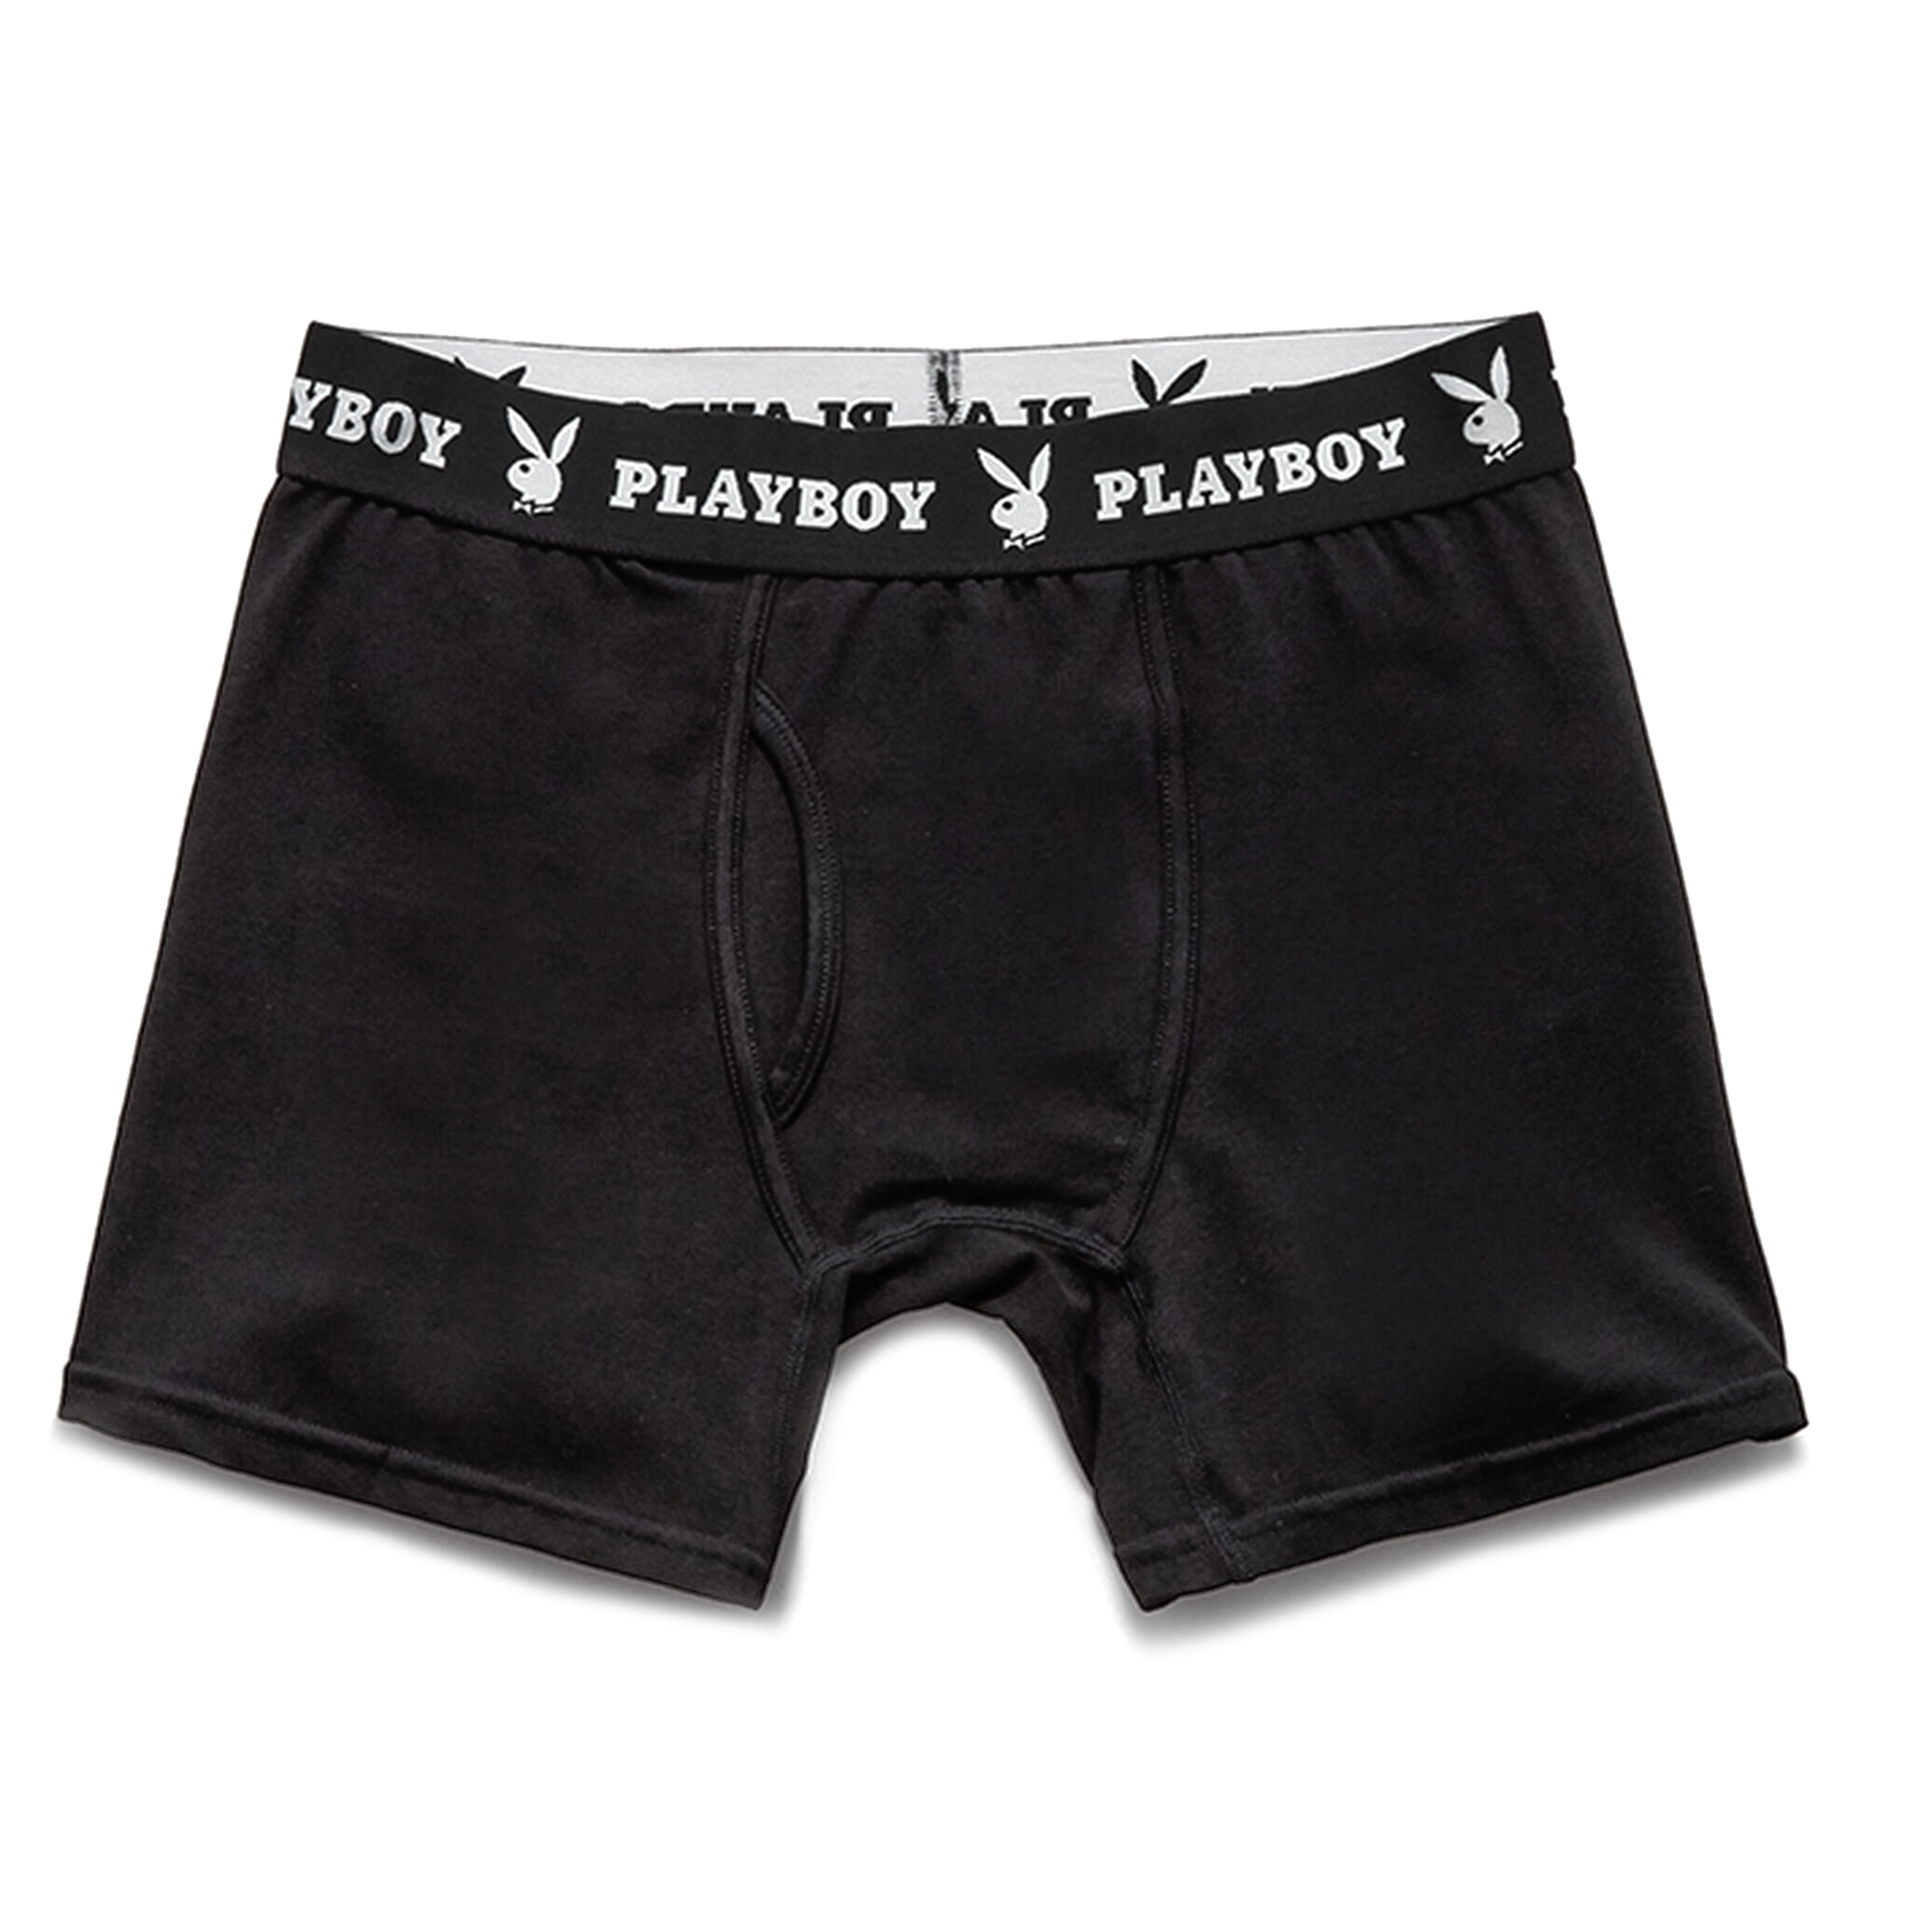 online shopping for men innerwear, PlayBoy Underwear Online…